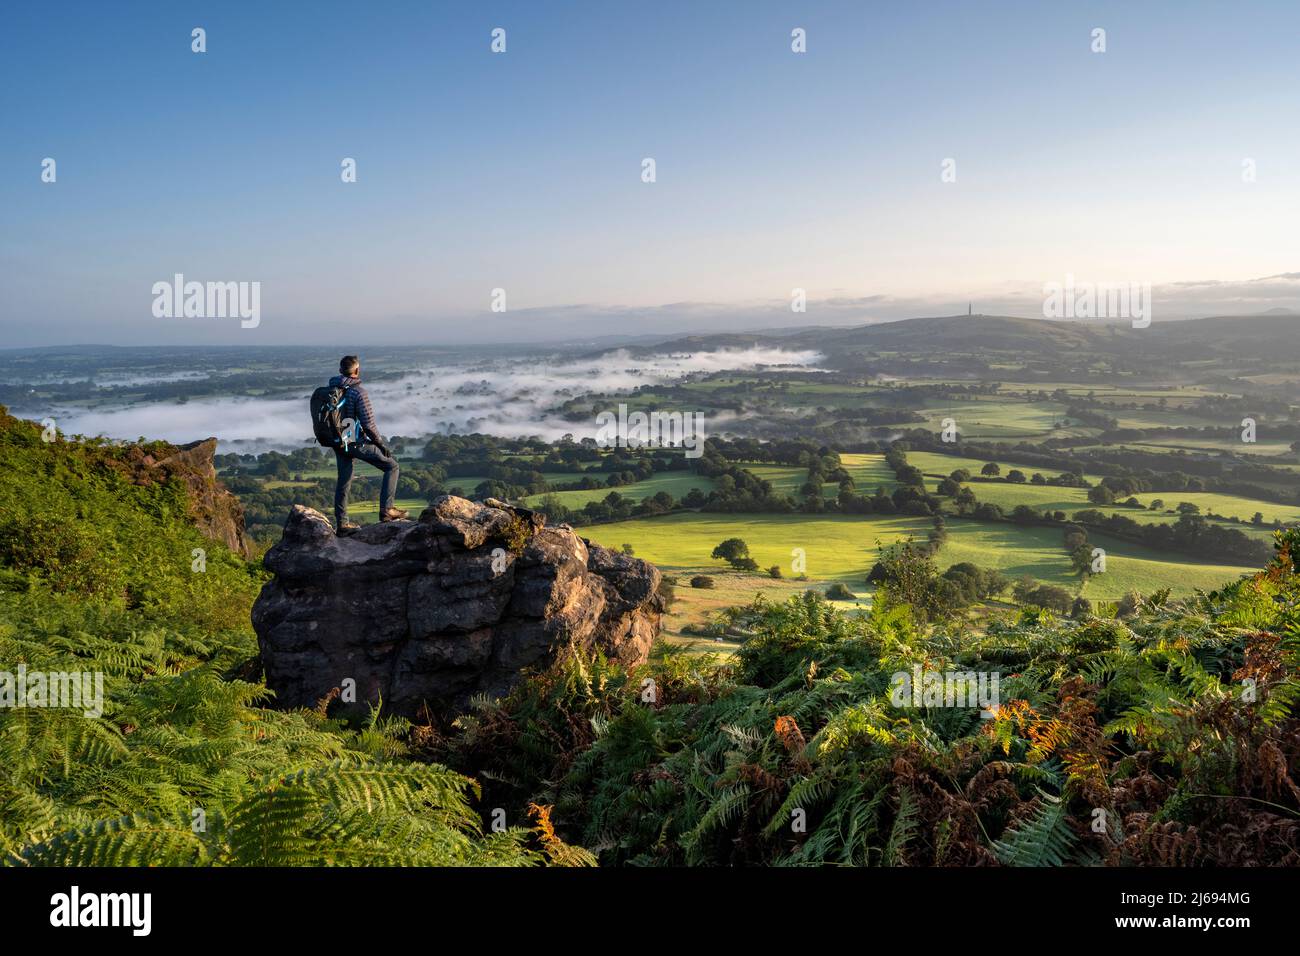 Un marcheur se tenait sur un rocher à Cloudside en regardant à travers les plaines de Cheshire, Congleton, Cheshire, Angleterre, Royaume-Uni, Europe Banque D'Images